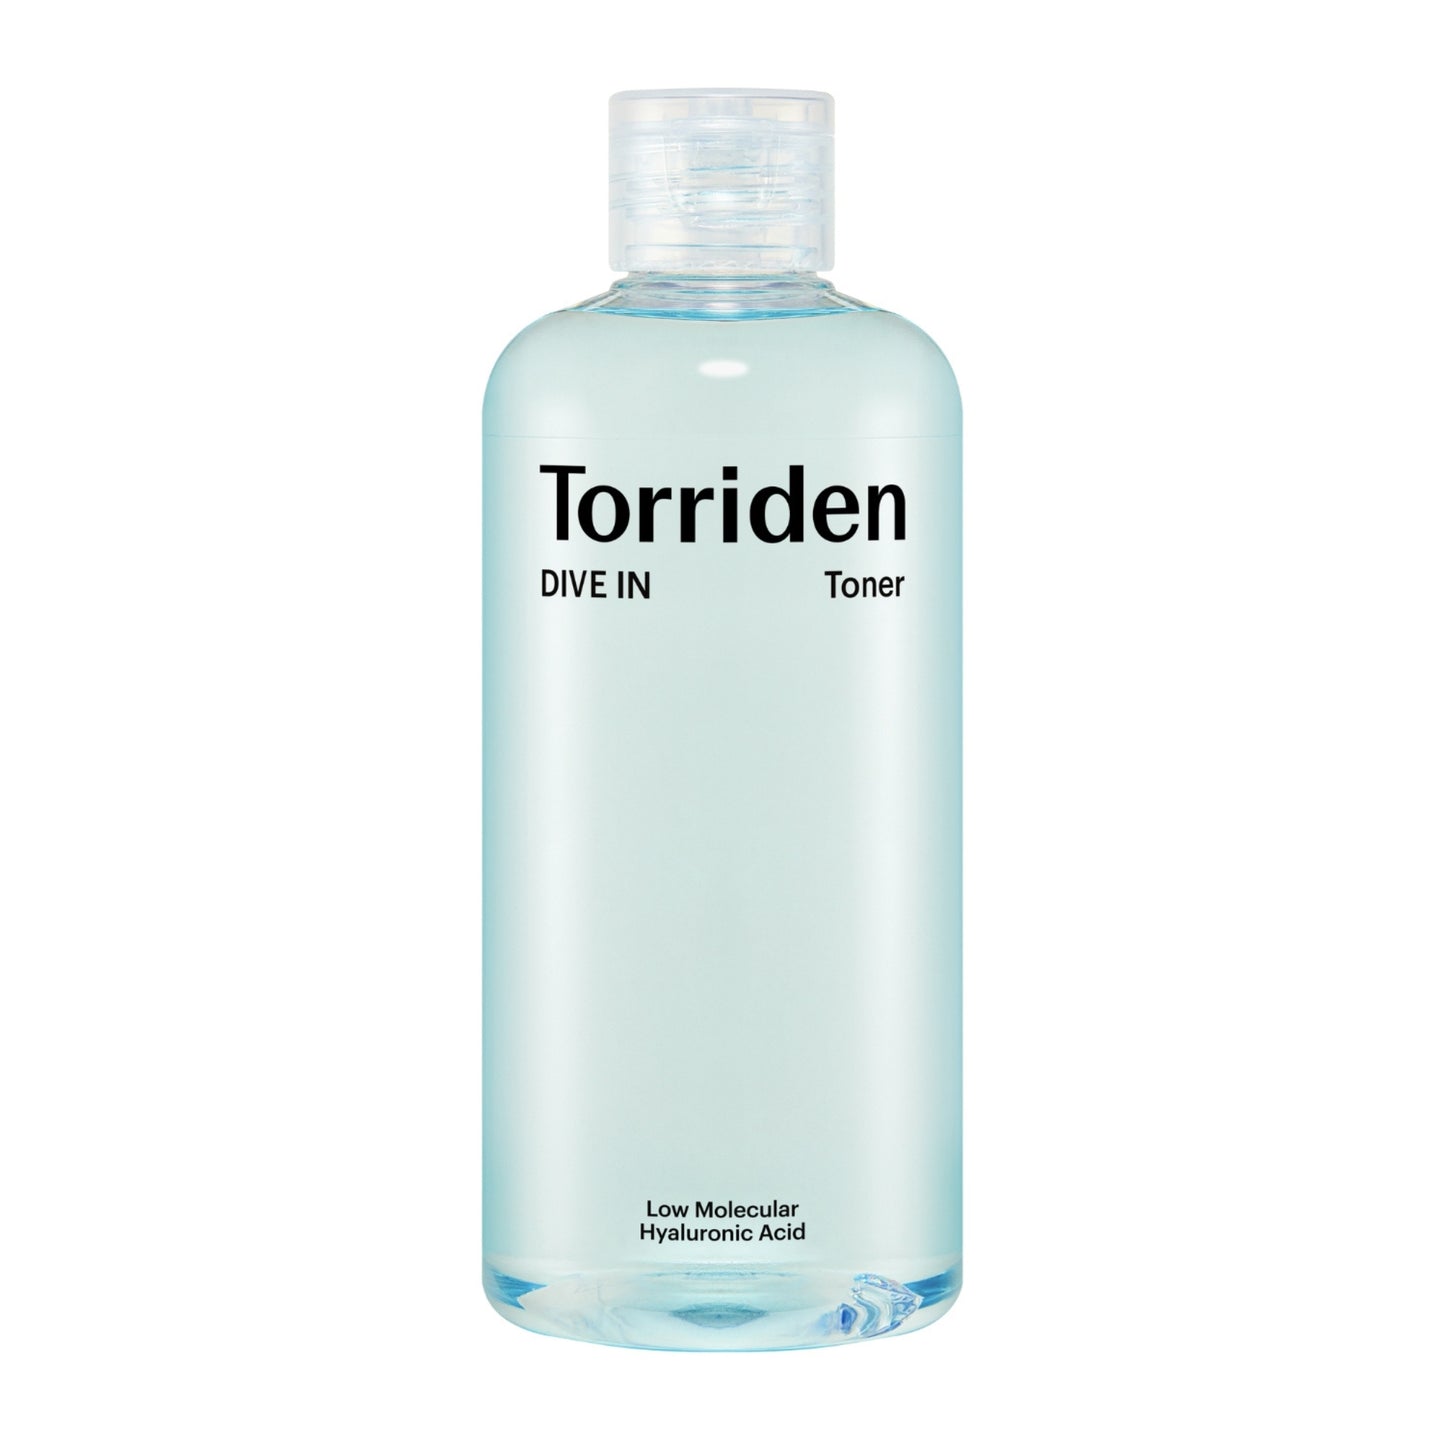 TORRIDEN DIVE-IN Low Molecular Hyaluronic Acid Toner